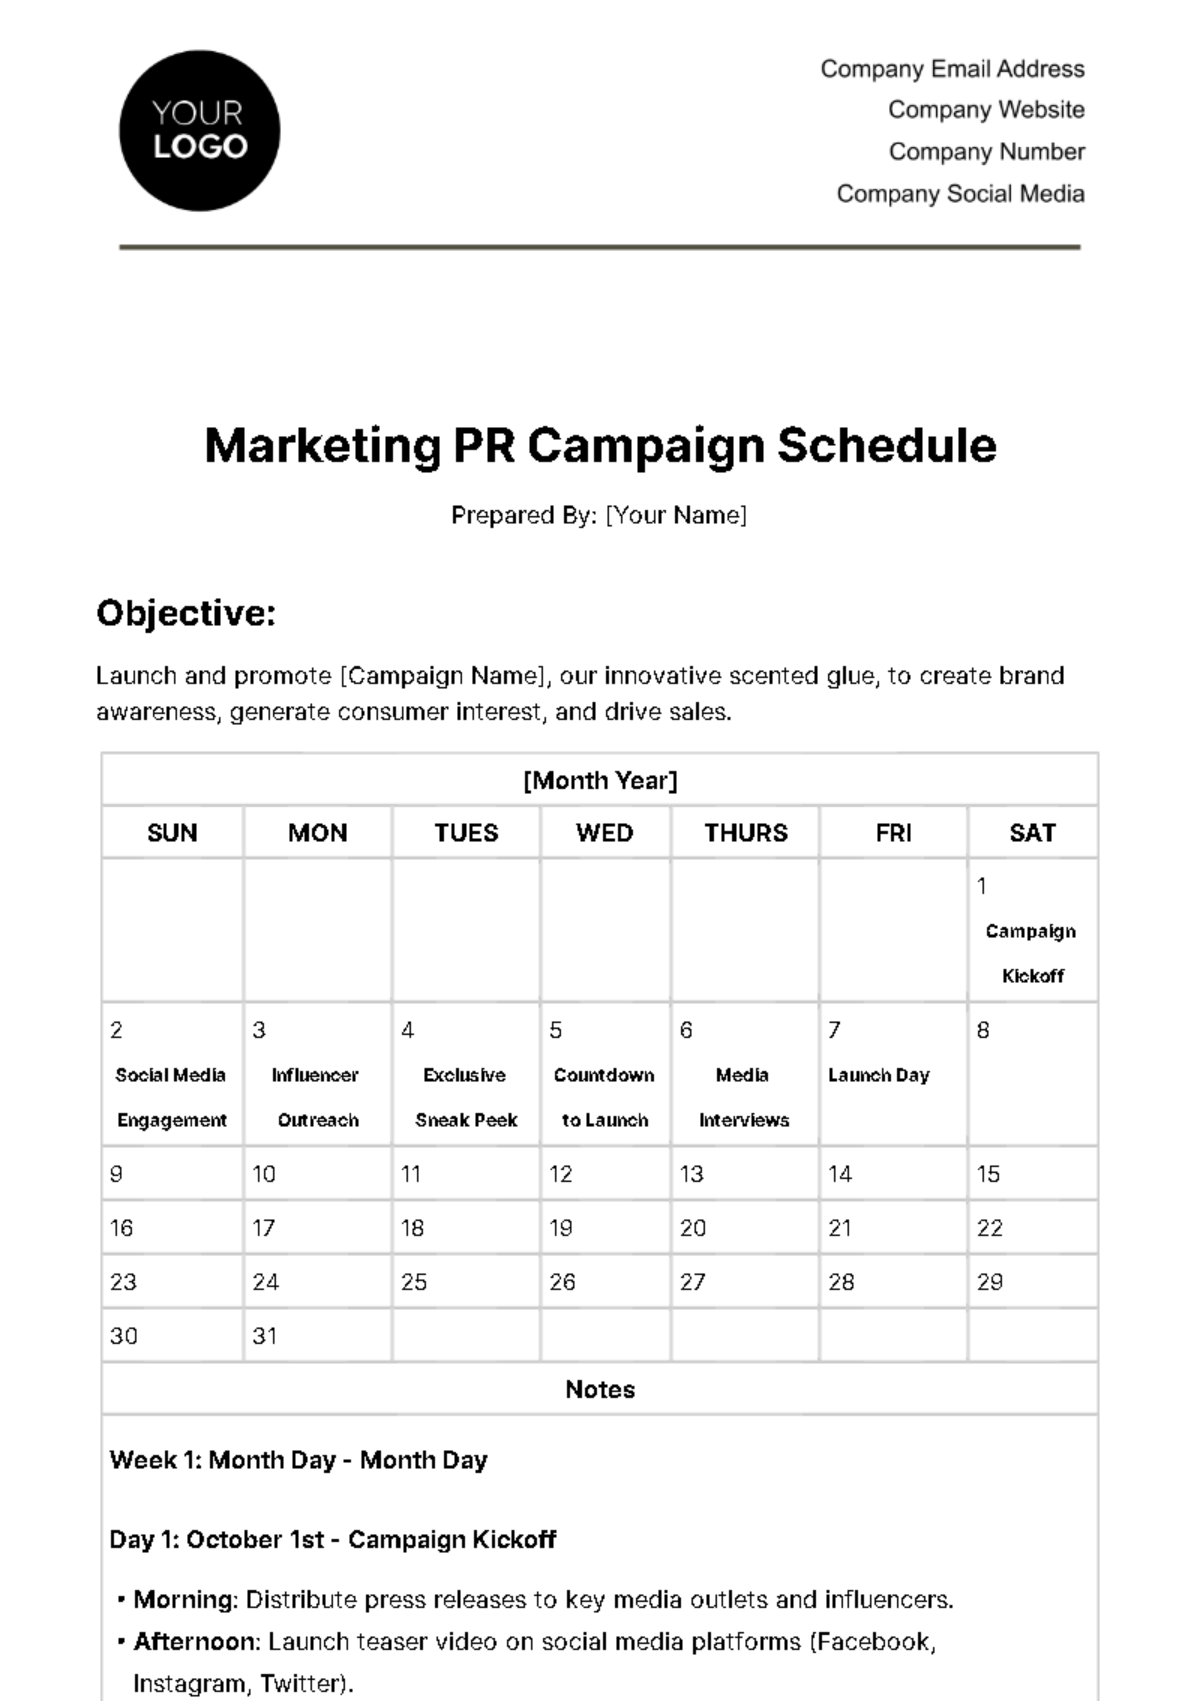 Marketing PR Campaign Schedule Template